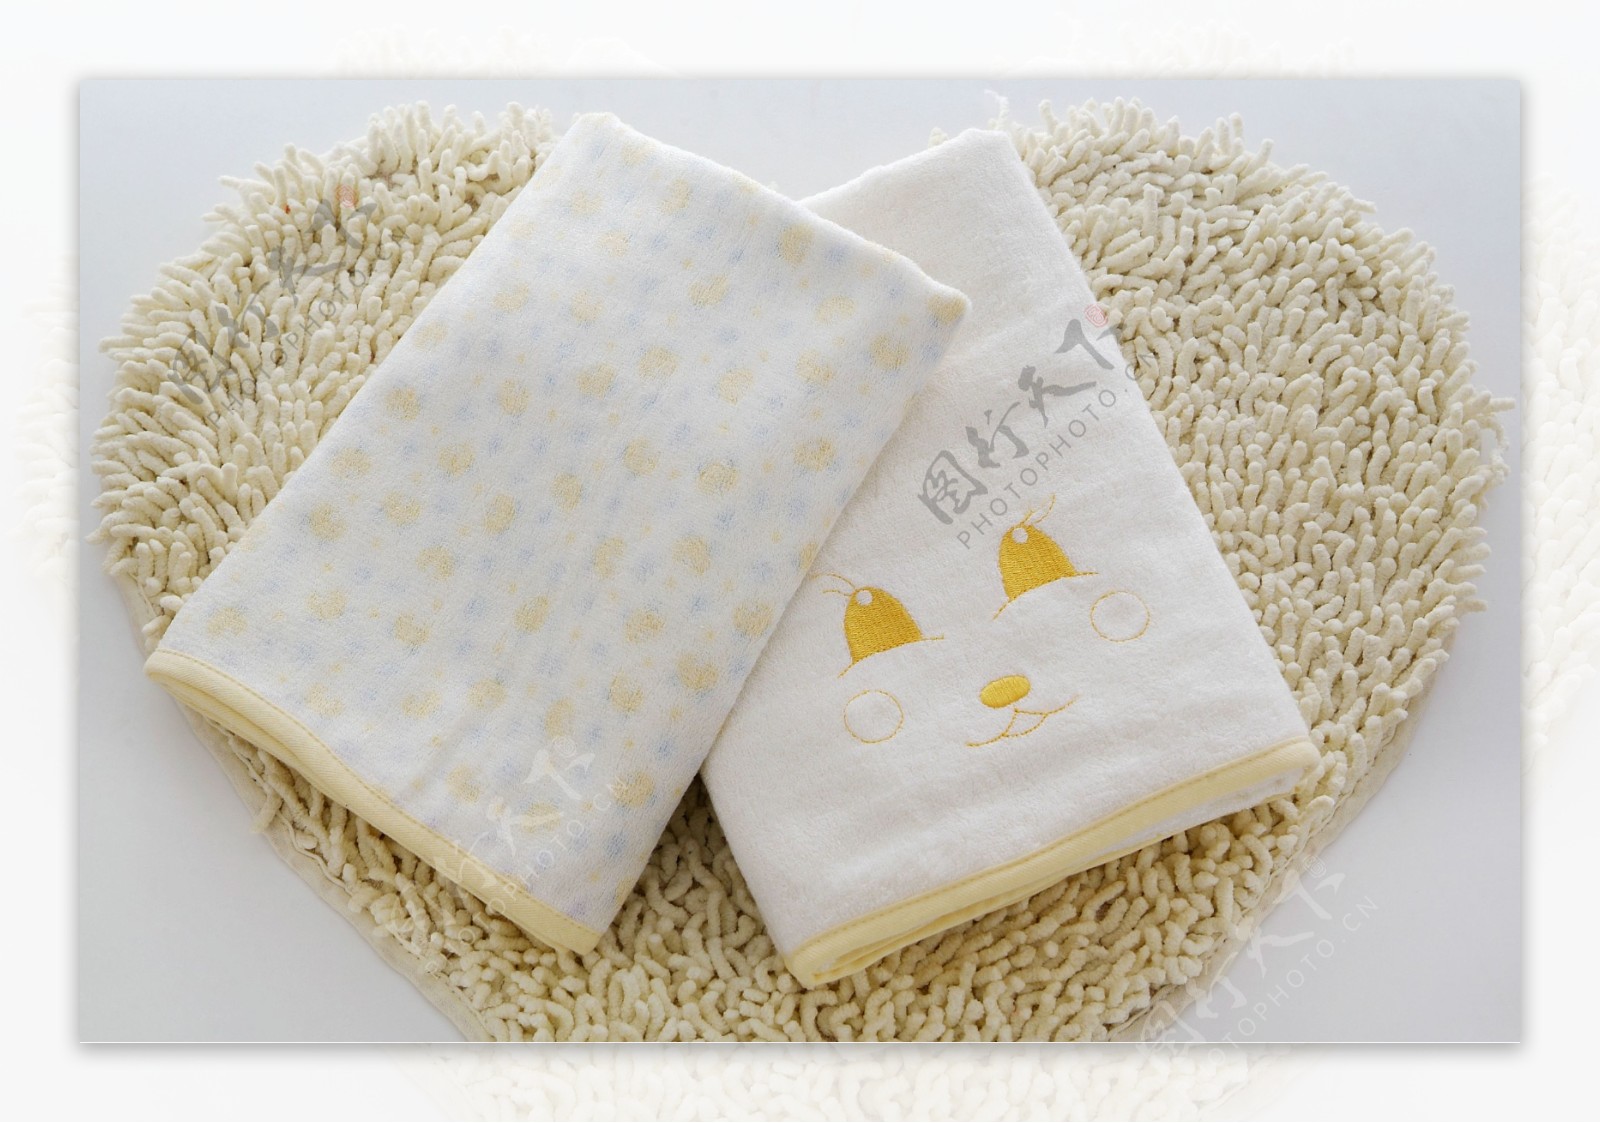 竹纤维宝宝毛巾图片